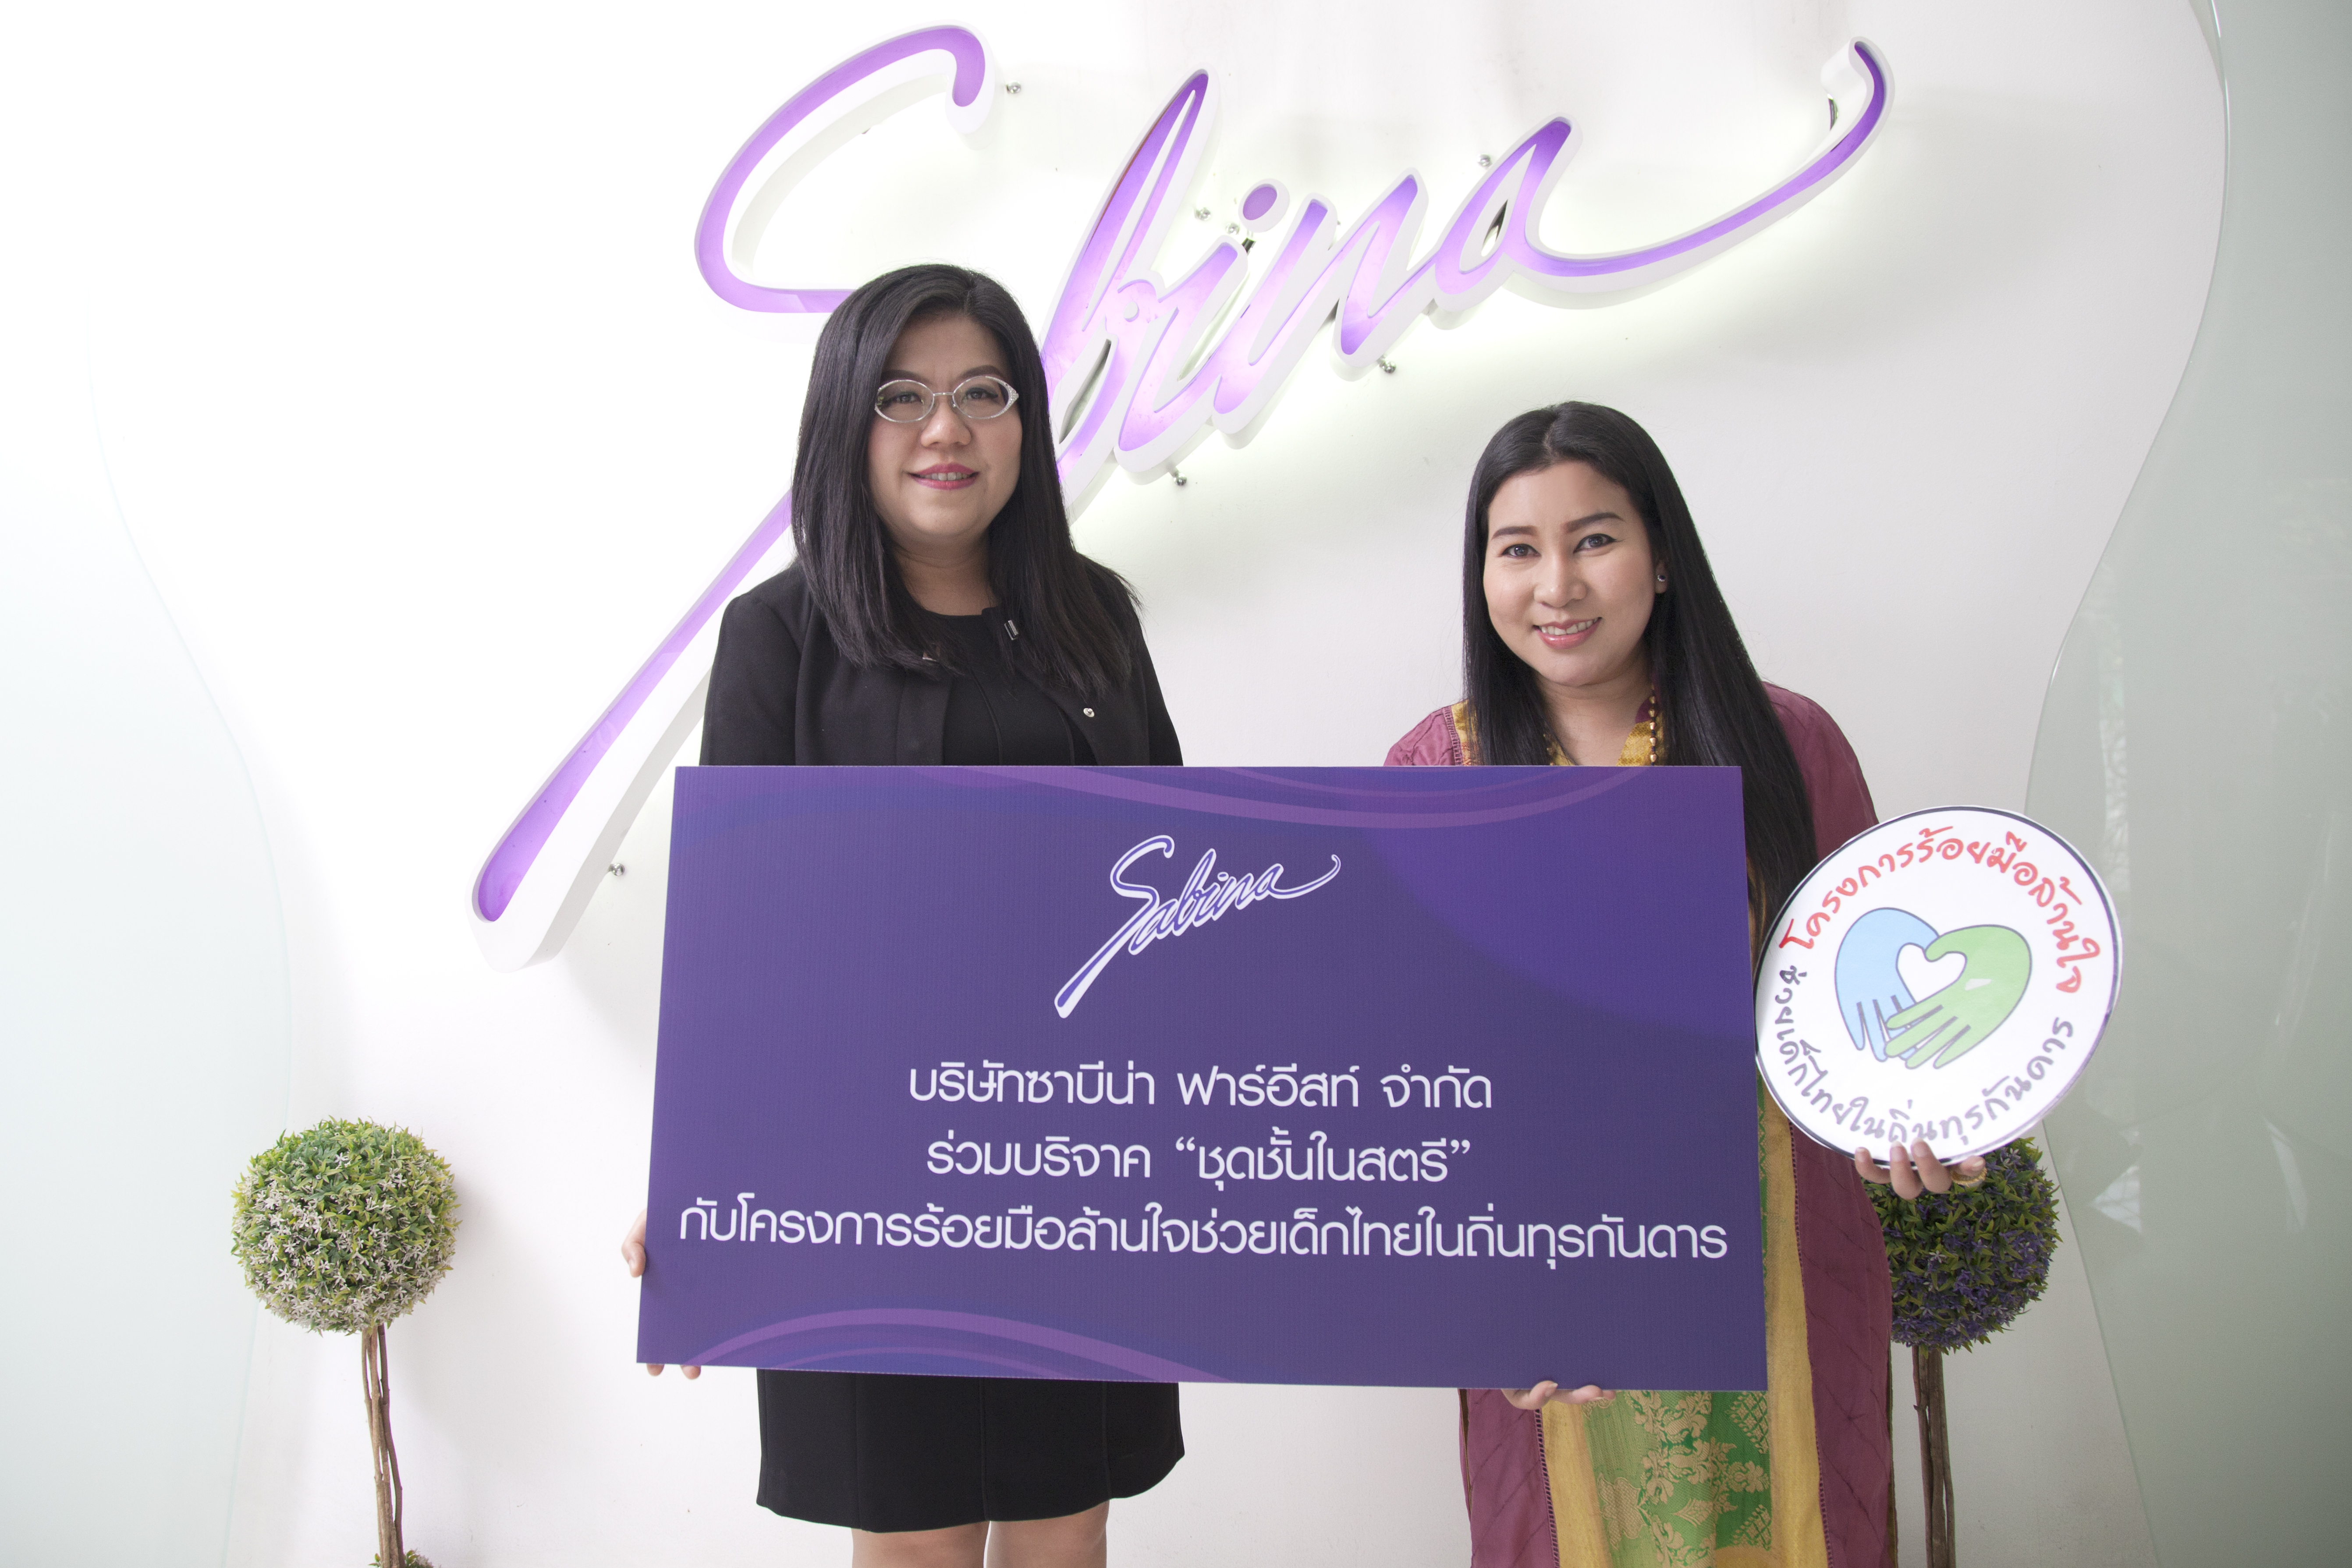 บริษัทซาบีน่า ฟาร์อีสท์ จำกัด ร่วมสนับสนุน“โครงการร้อยมือล้านใจช่วยเด็กไทยในถิ่นทุรกันดาร ปีที่ 5” (20-21/09/17)